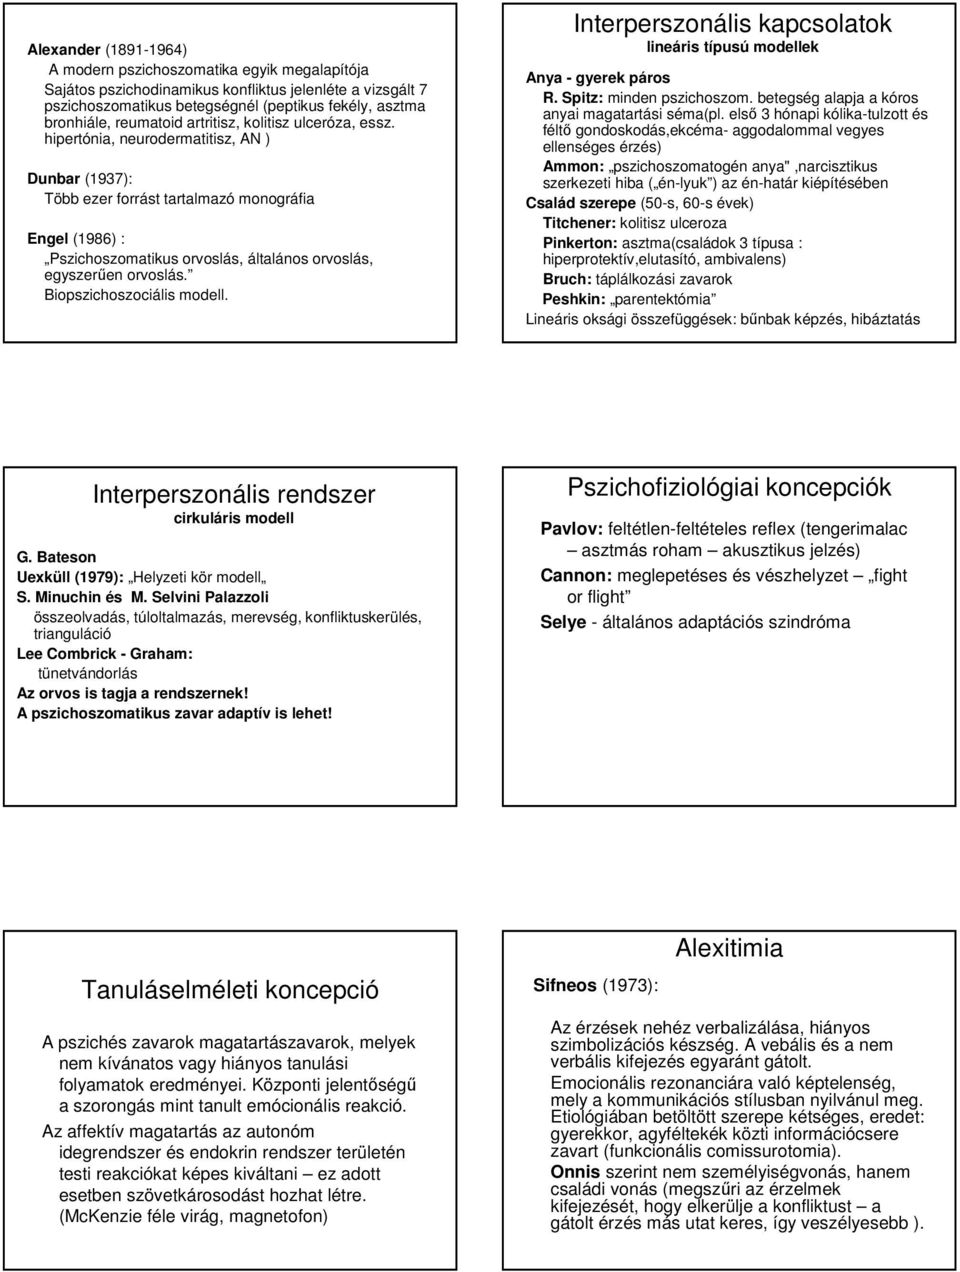 hipertónia, neurodermatitisz, AN ) Dunbar (1937): Több ezer forrást tartalmazó monográfia Engel (1986) : Pszichoszomatikus orvoslás, általános orvoslás, egyszerően orvoslás.